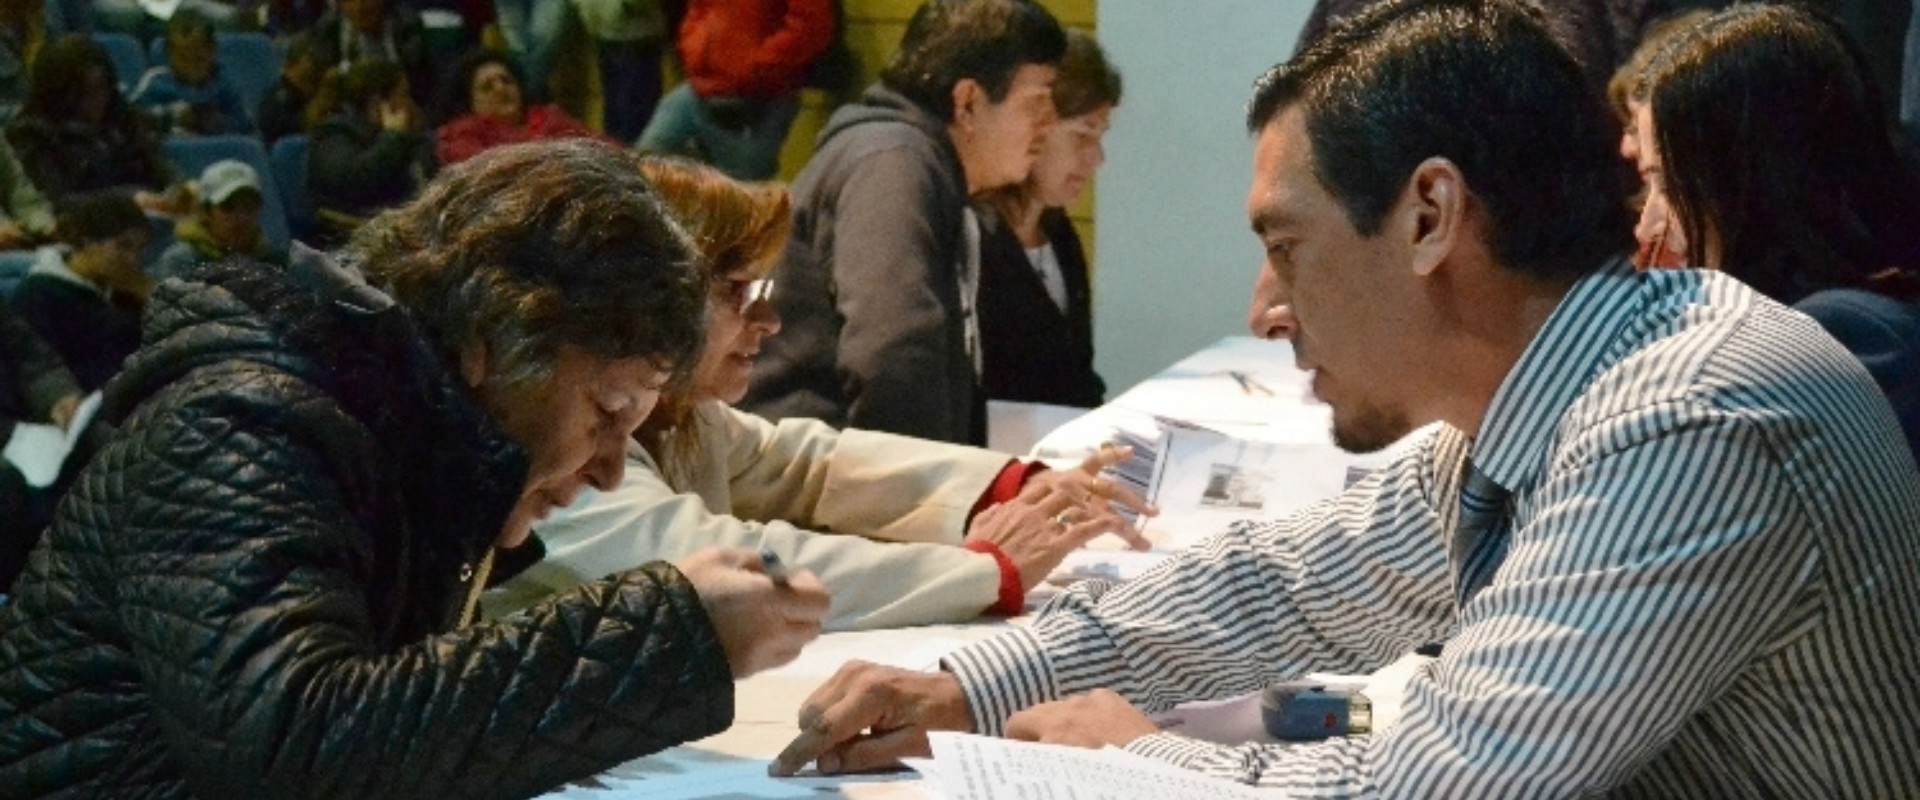 La provincia rubricó escrituras de viviendas a 136 familias de San José y Concepción del Uruguay